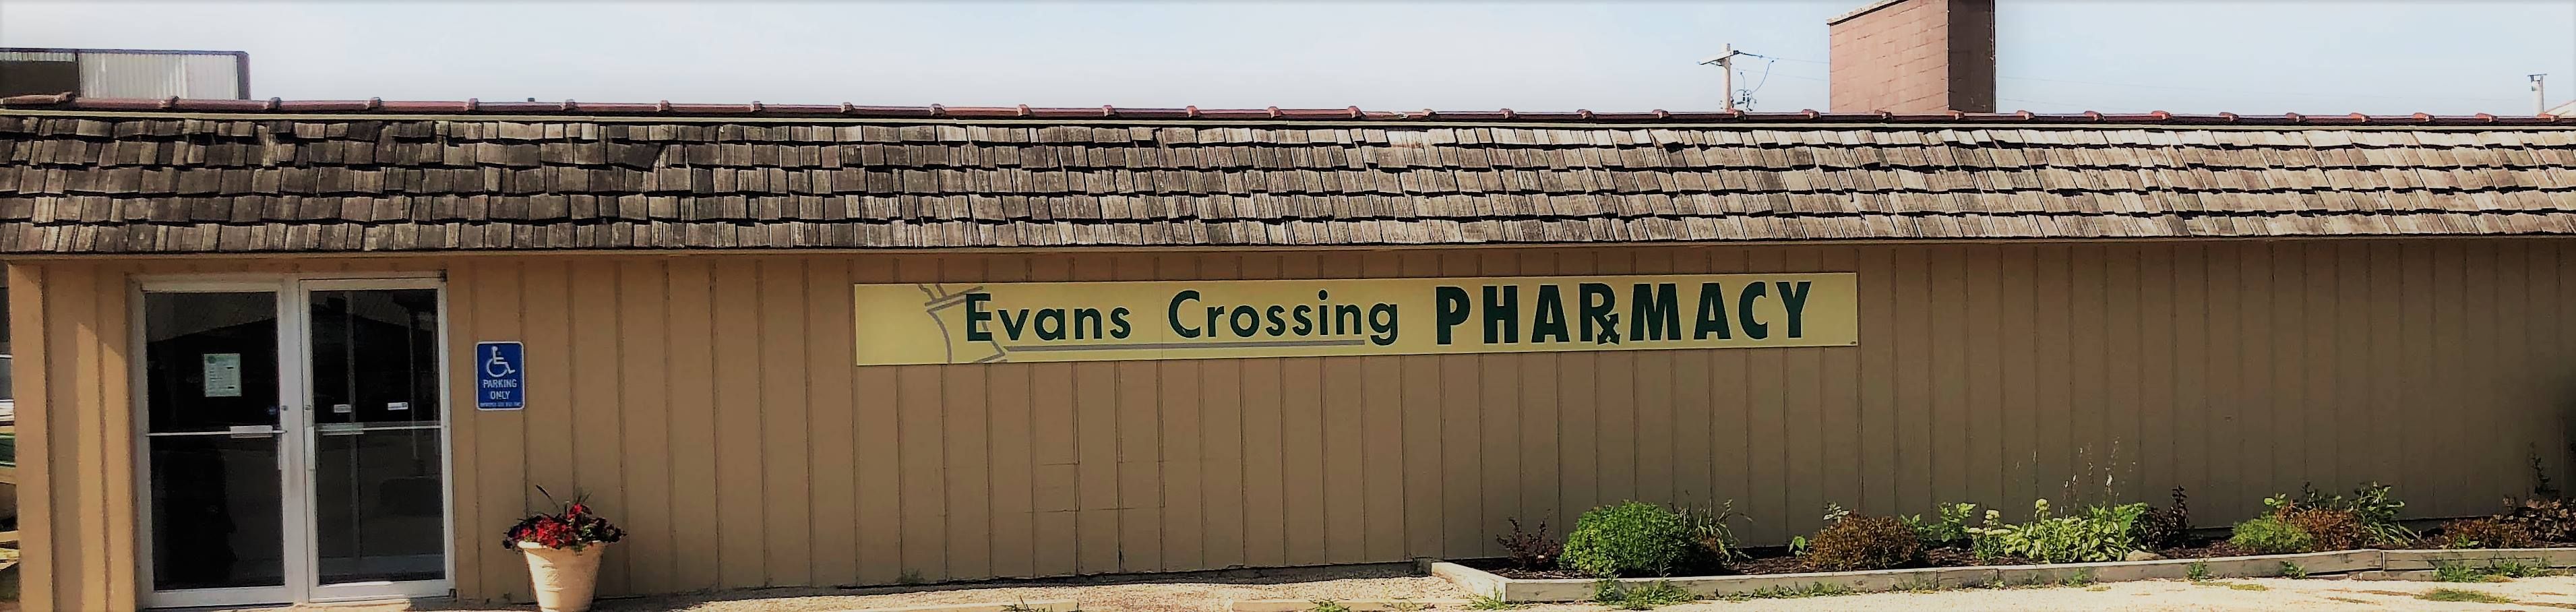 Evans Crossing Pharmacy